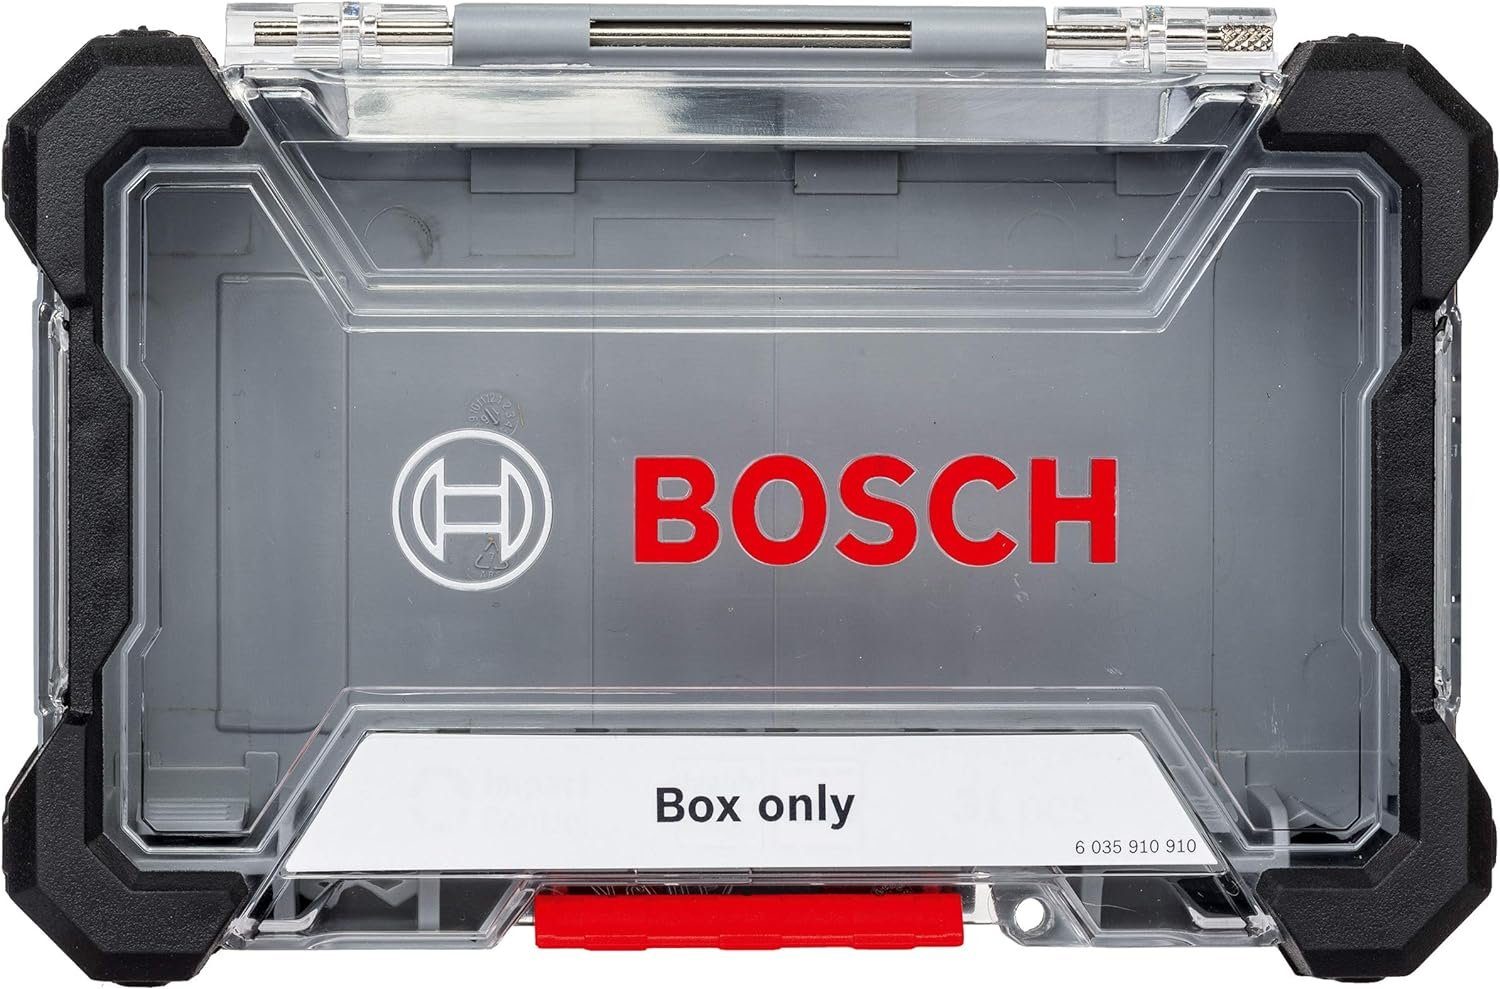 BOSCH Bohrer- und Bitset Bosch Professional Pick and Click Box Leer M Zubehör Schrauberbit